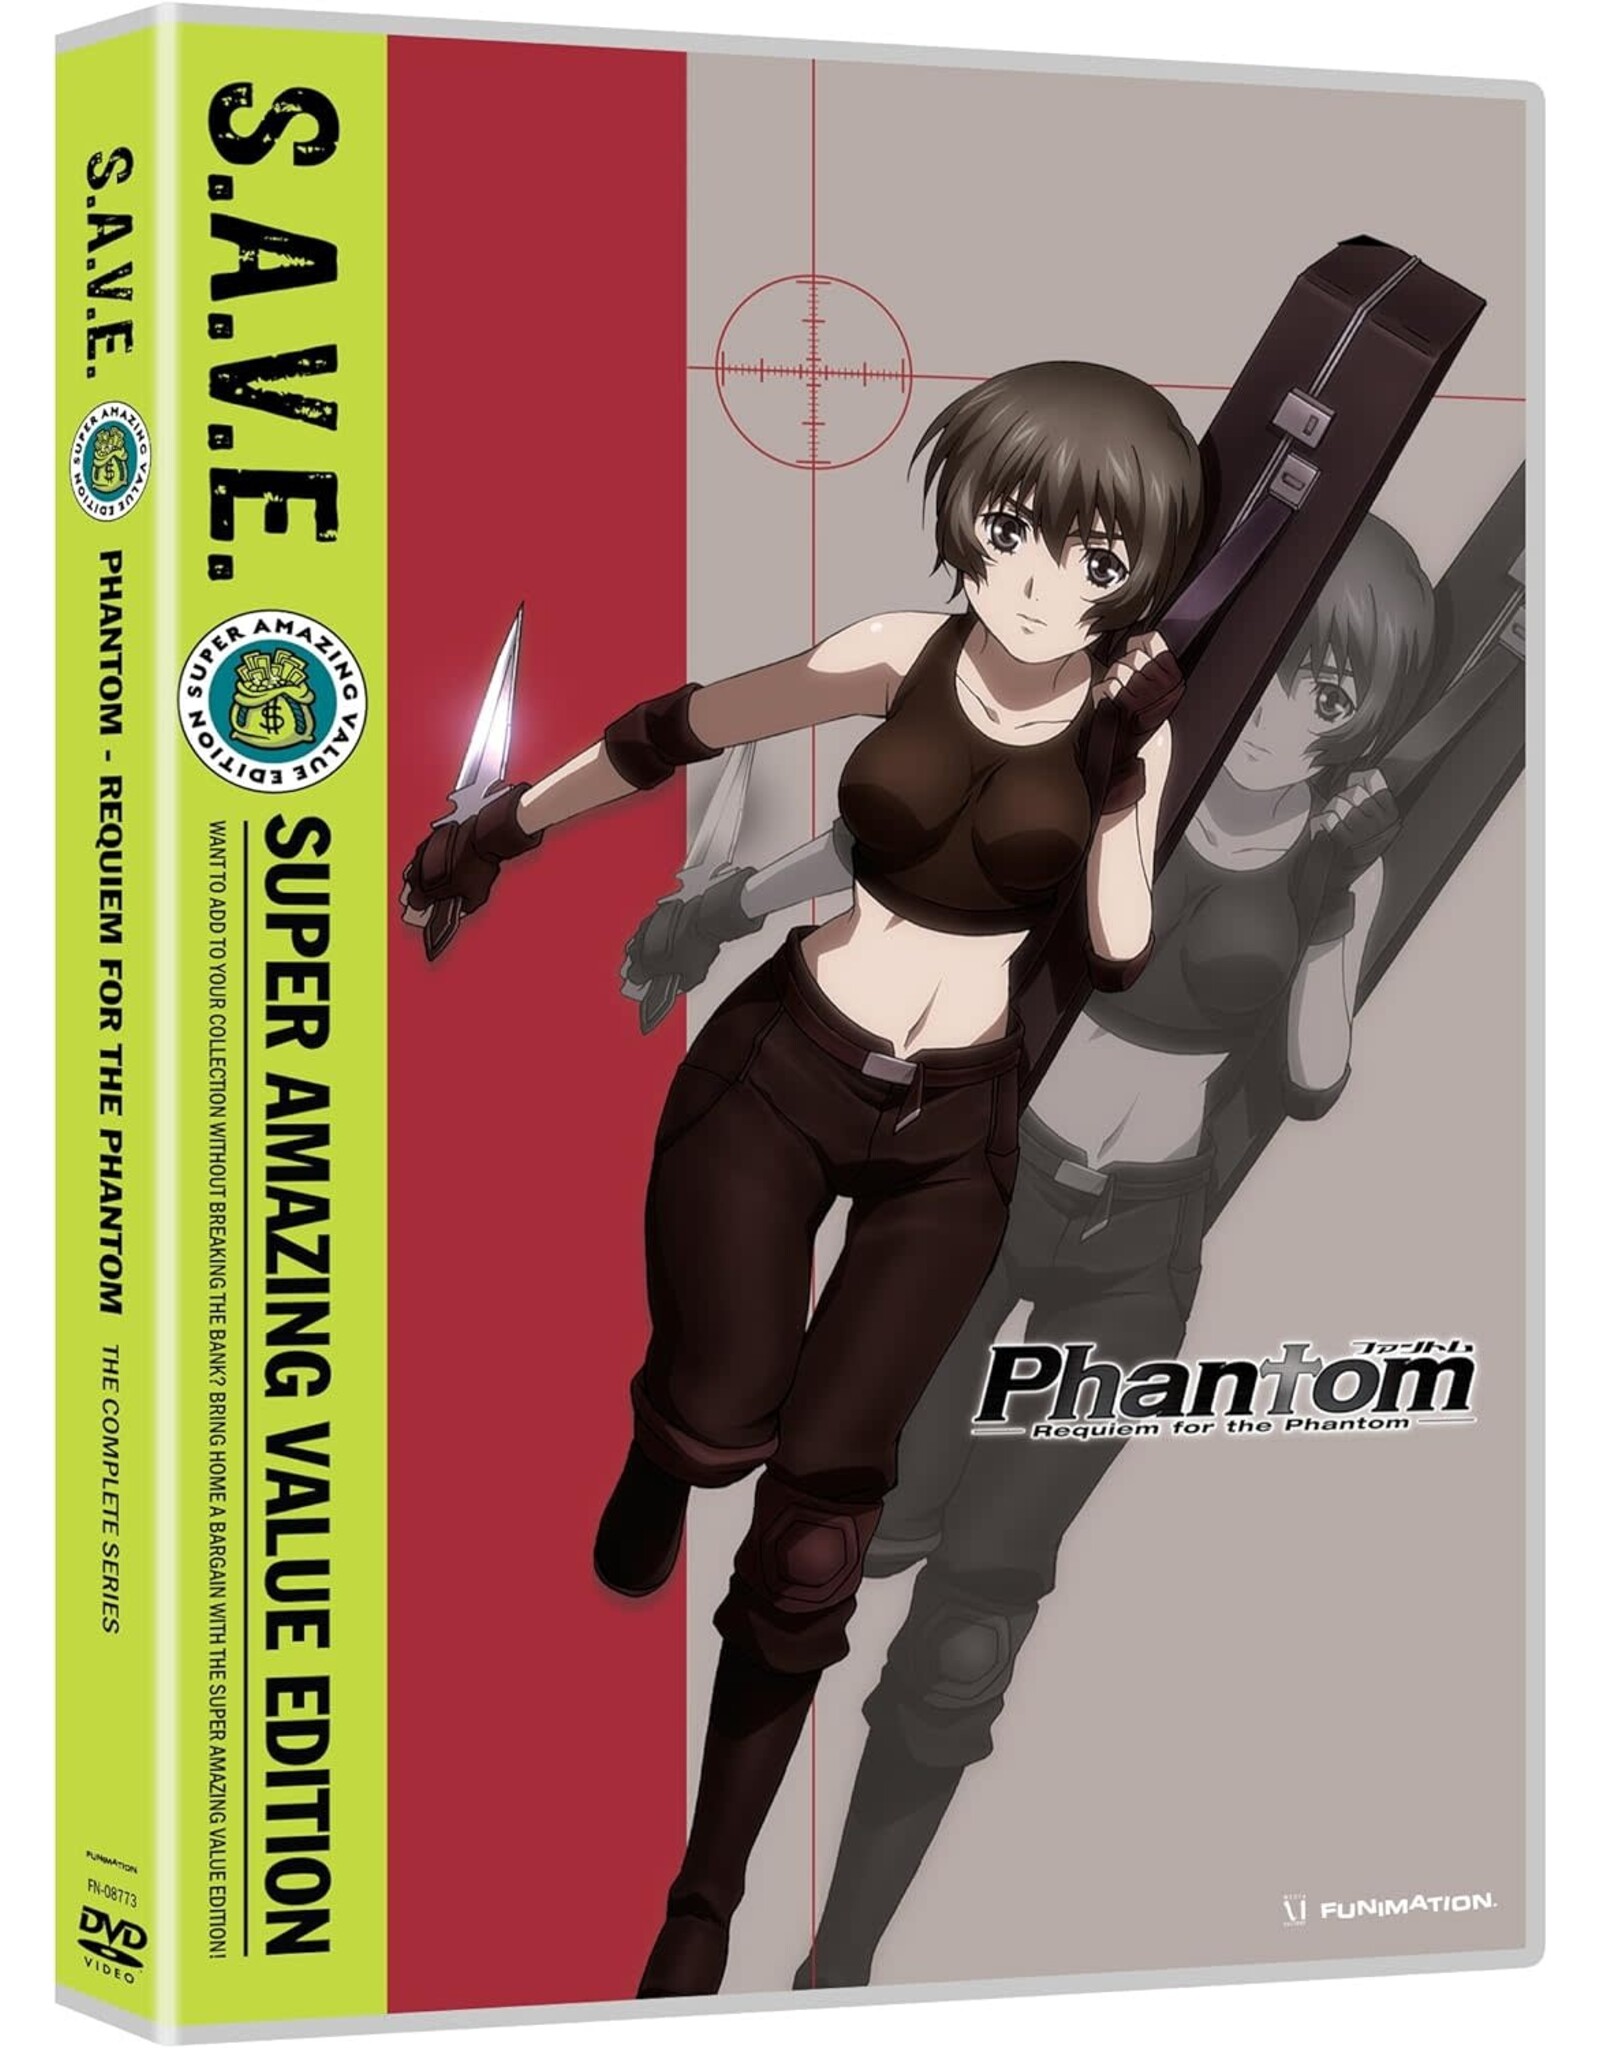 Anime & Animation Phantom Requiem For The Phantom Complete Series - S.A.V.E. (Used)